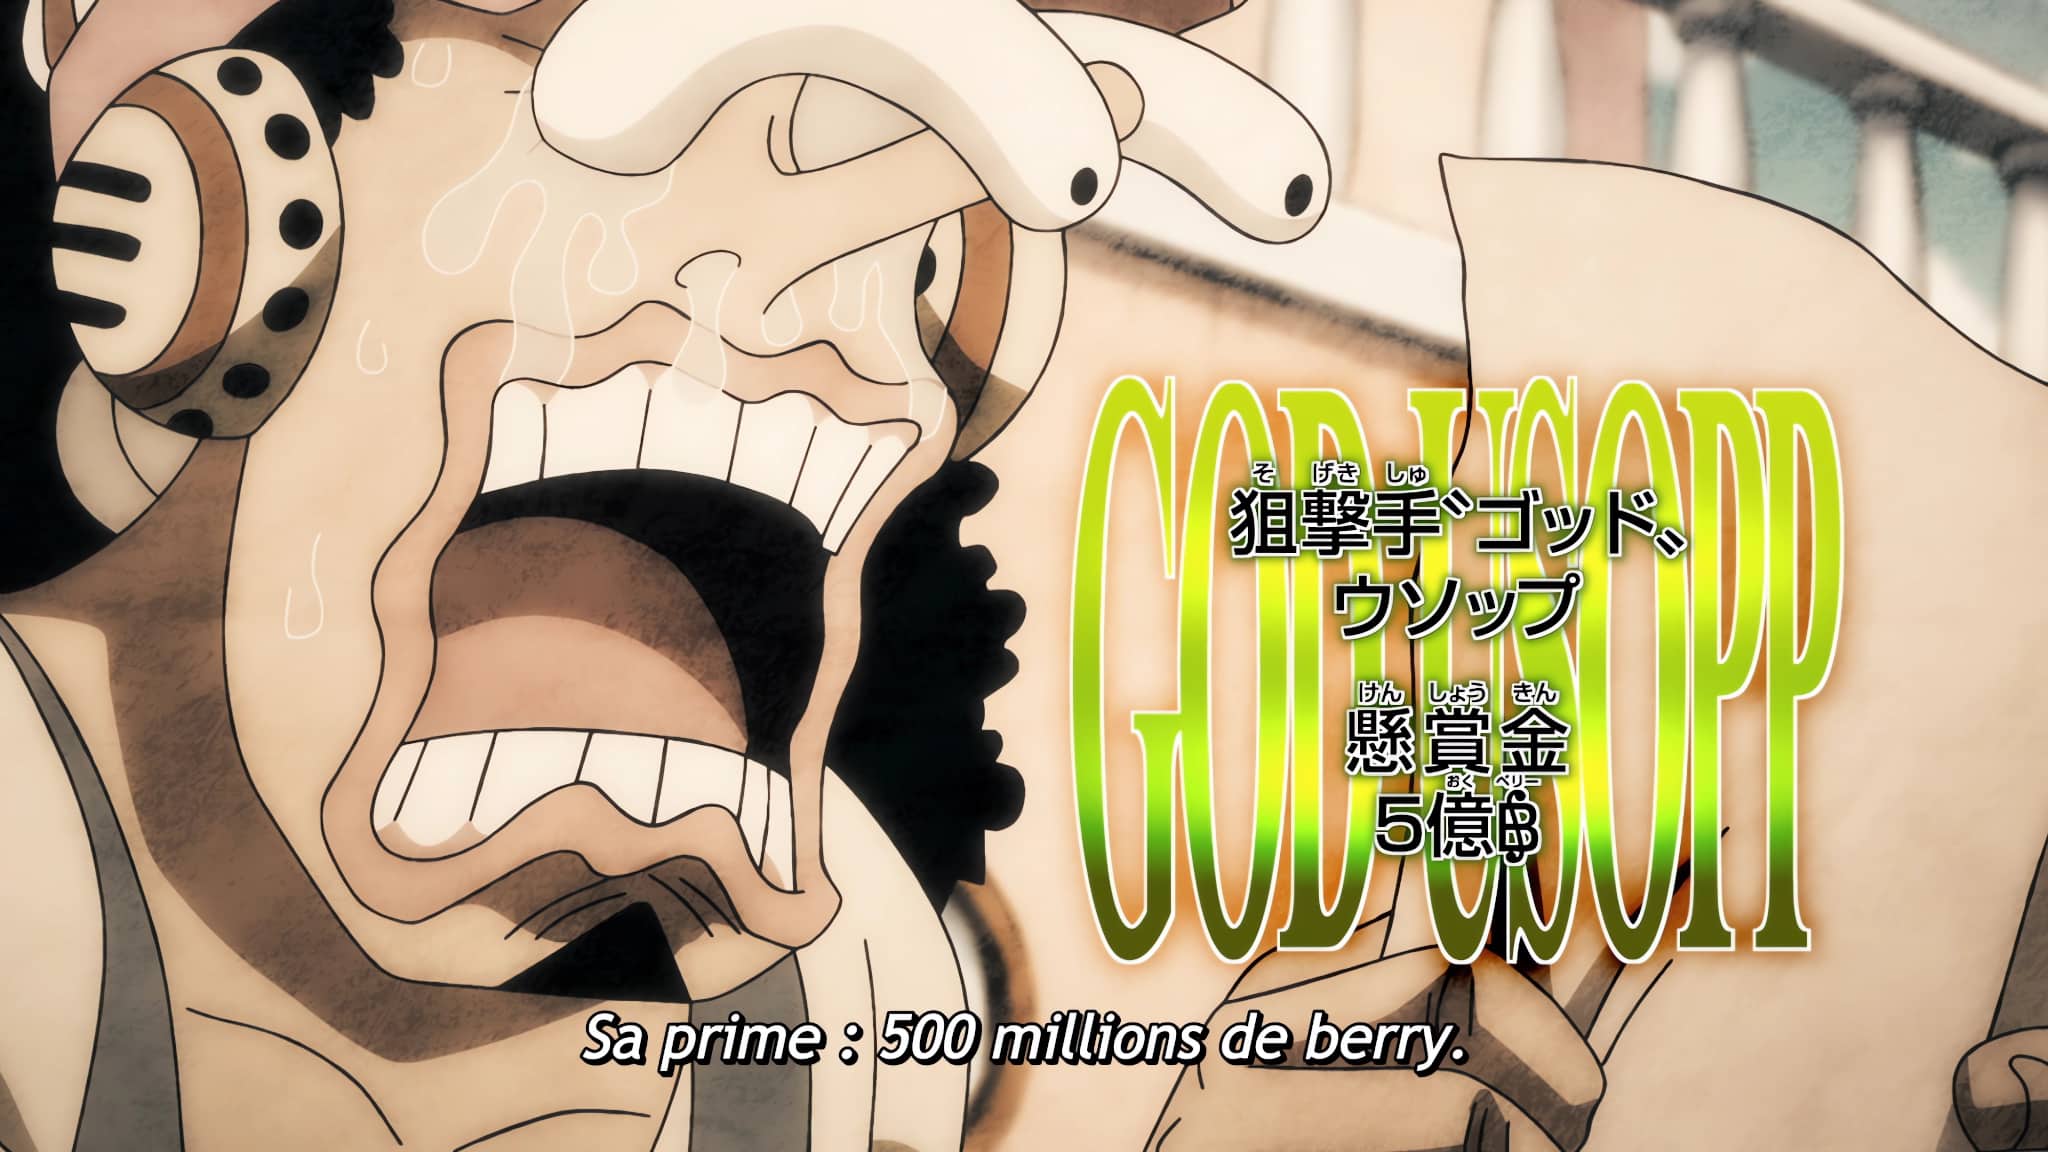 La prime de Usopp dans ONE PIECE après l'arc Wano Kuni : 500 Millions de Berrys